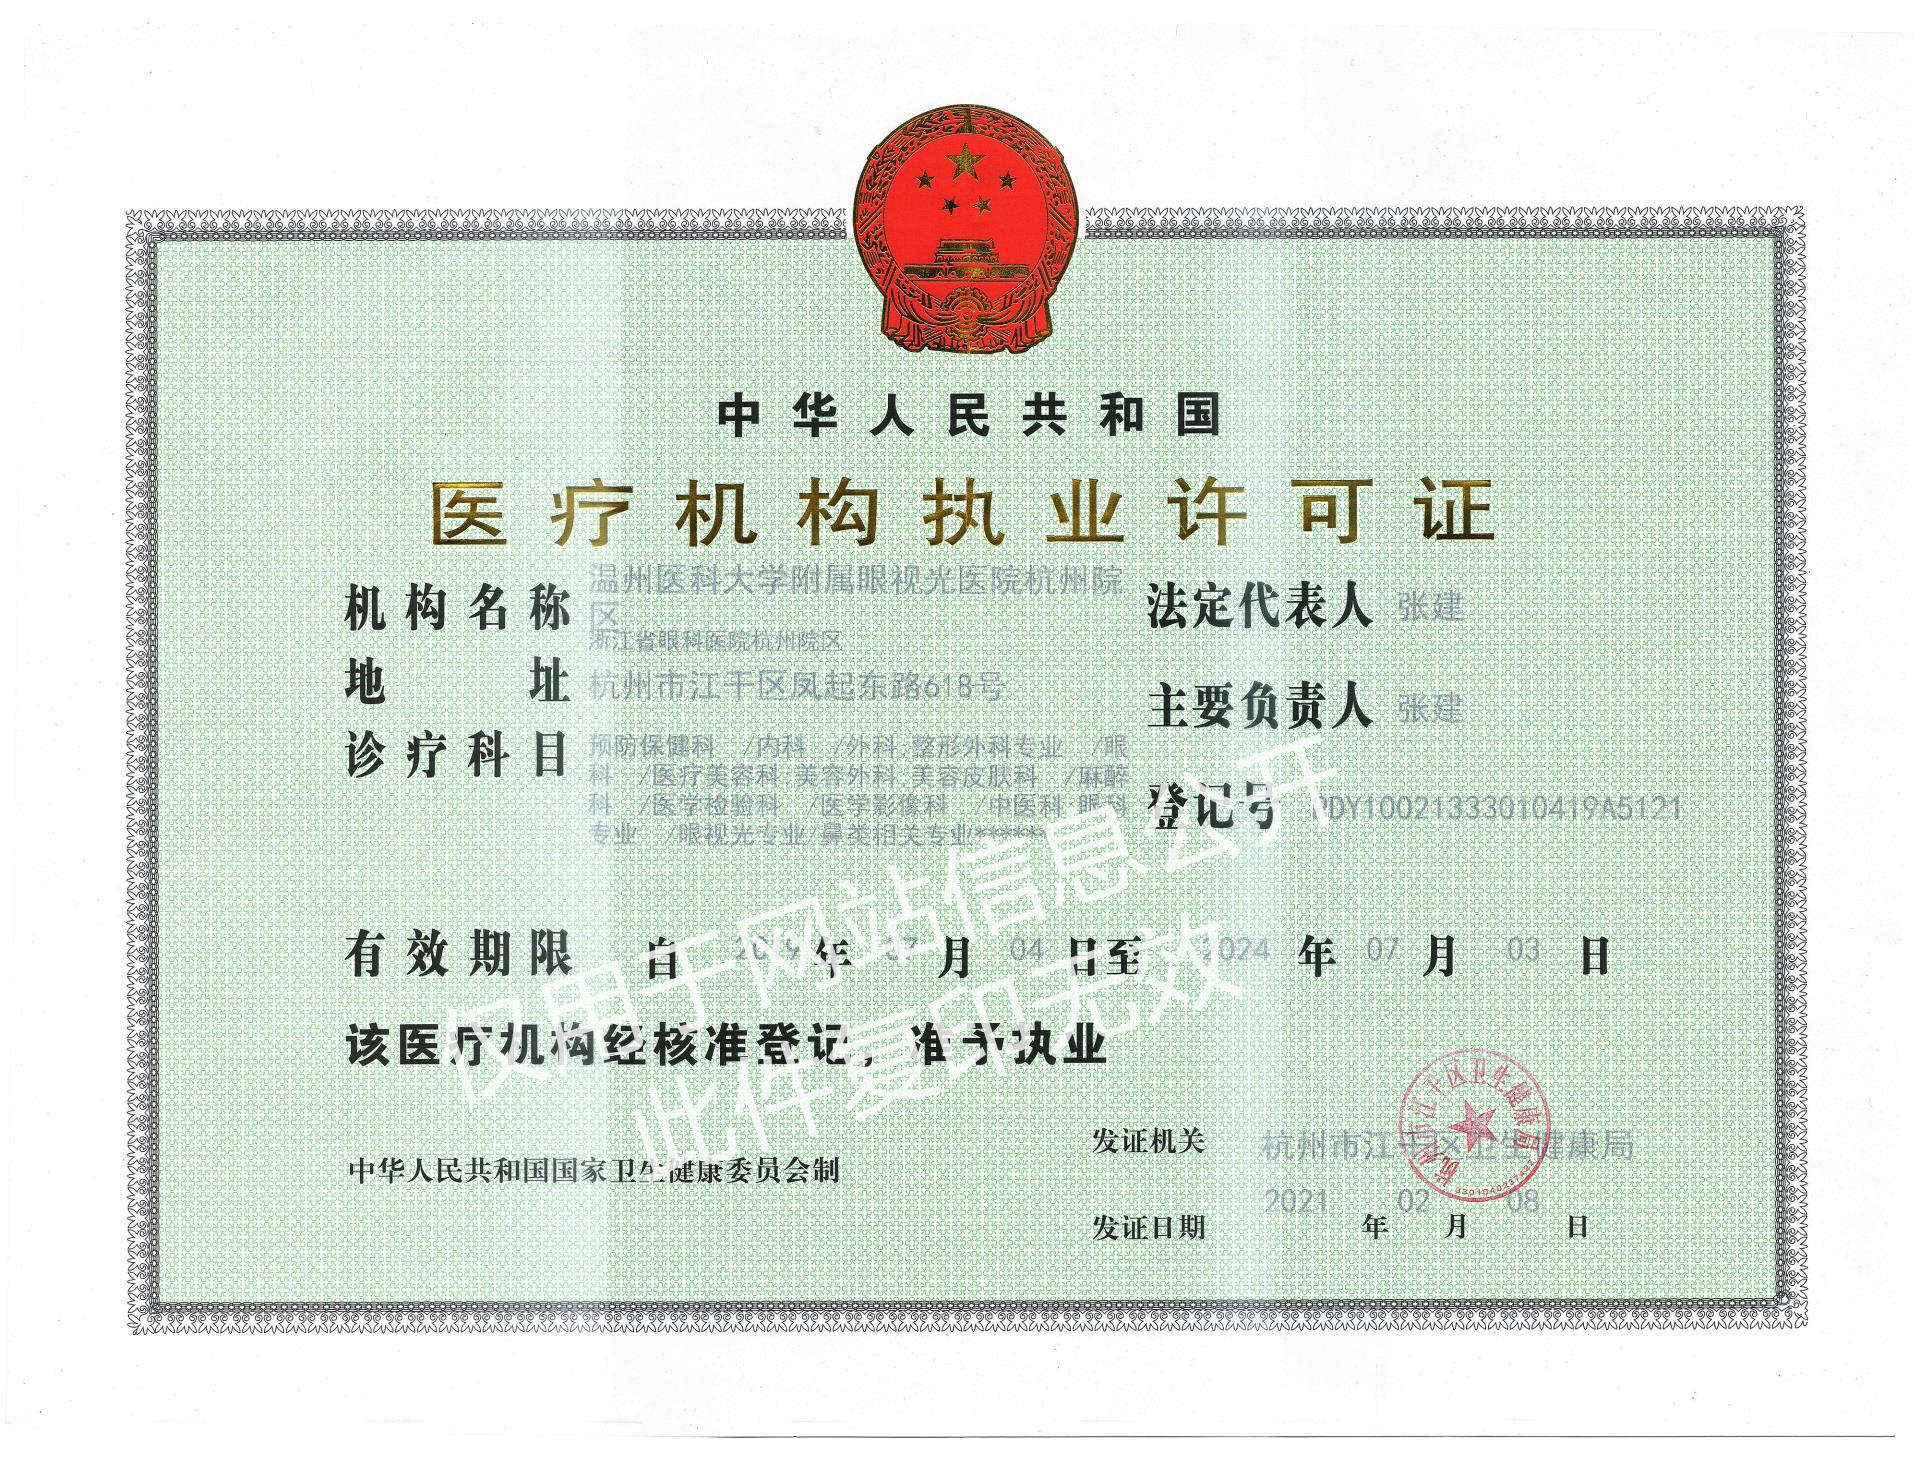 发证日期2021-2-8杭州院区-医疗机构执业许可证2022-9-19官网信息公开版.jpg